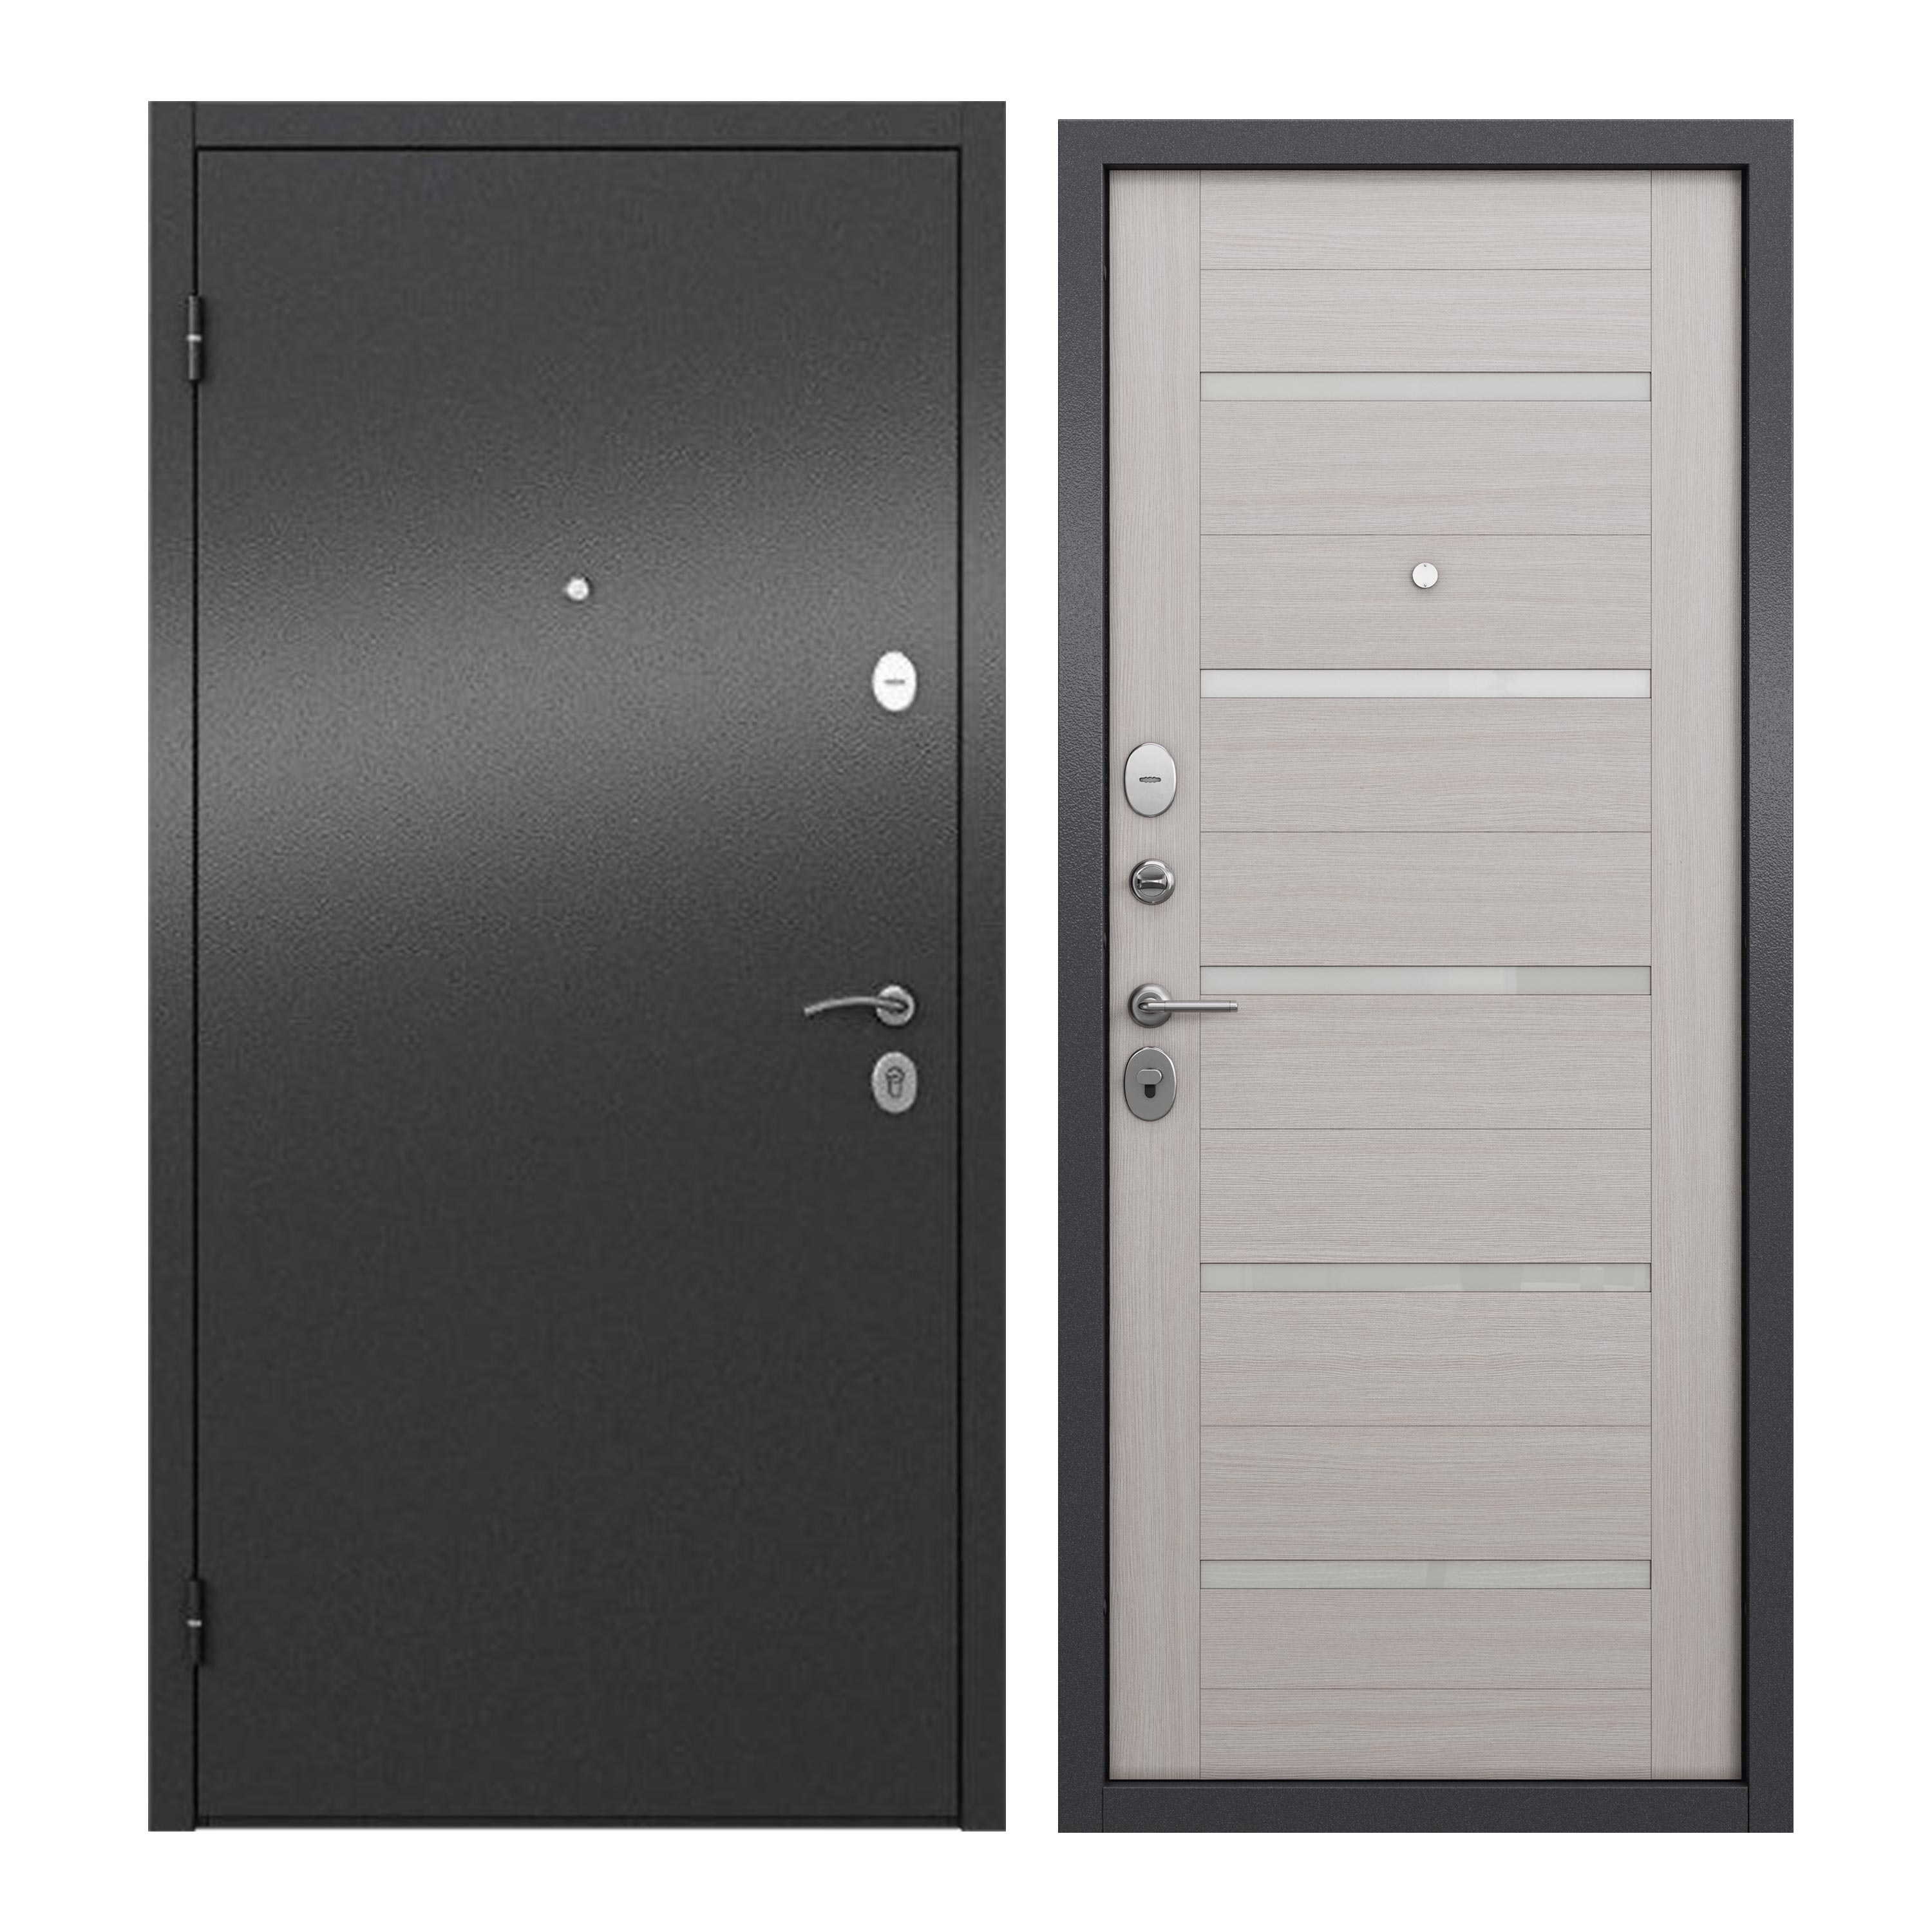 Дверь входная для квартиры ProLine металлическая Apartment X 960х2050, левая, серый